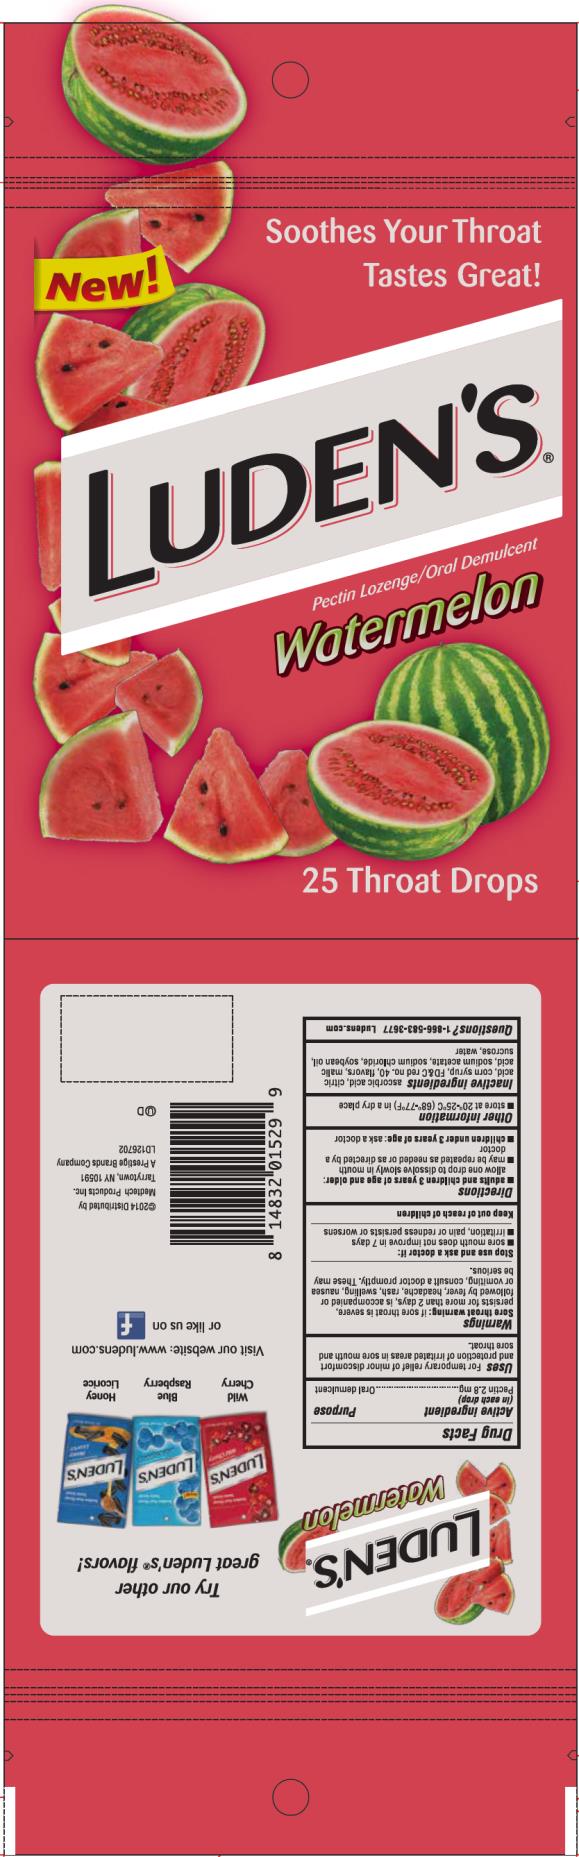 Luden’s
Pectin Lozenge/Oral Demulcent 
Watermelon
25 Throat Drops
